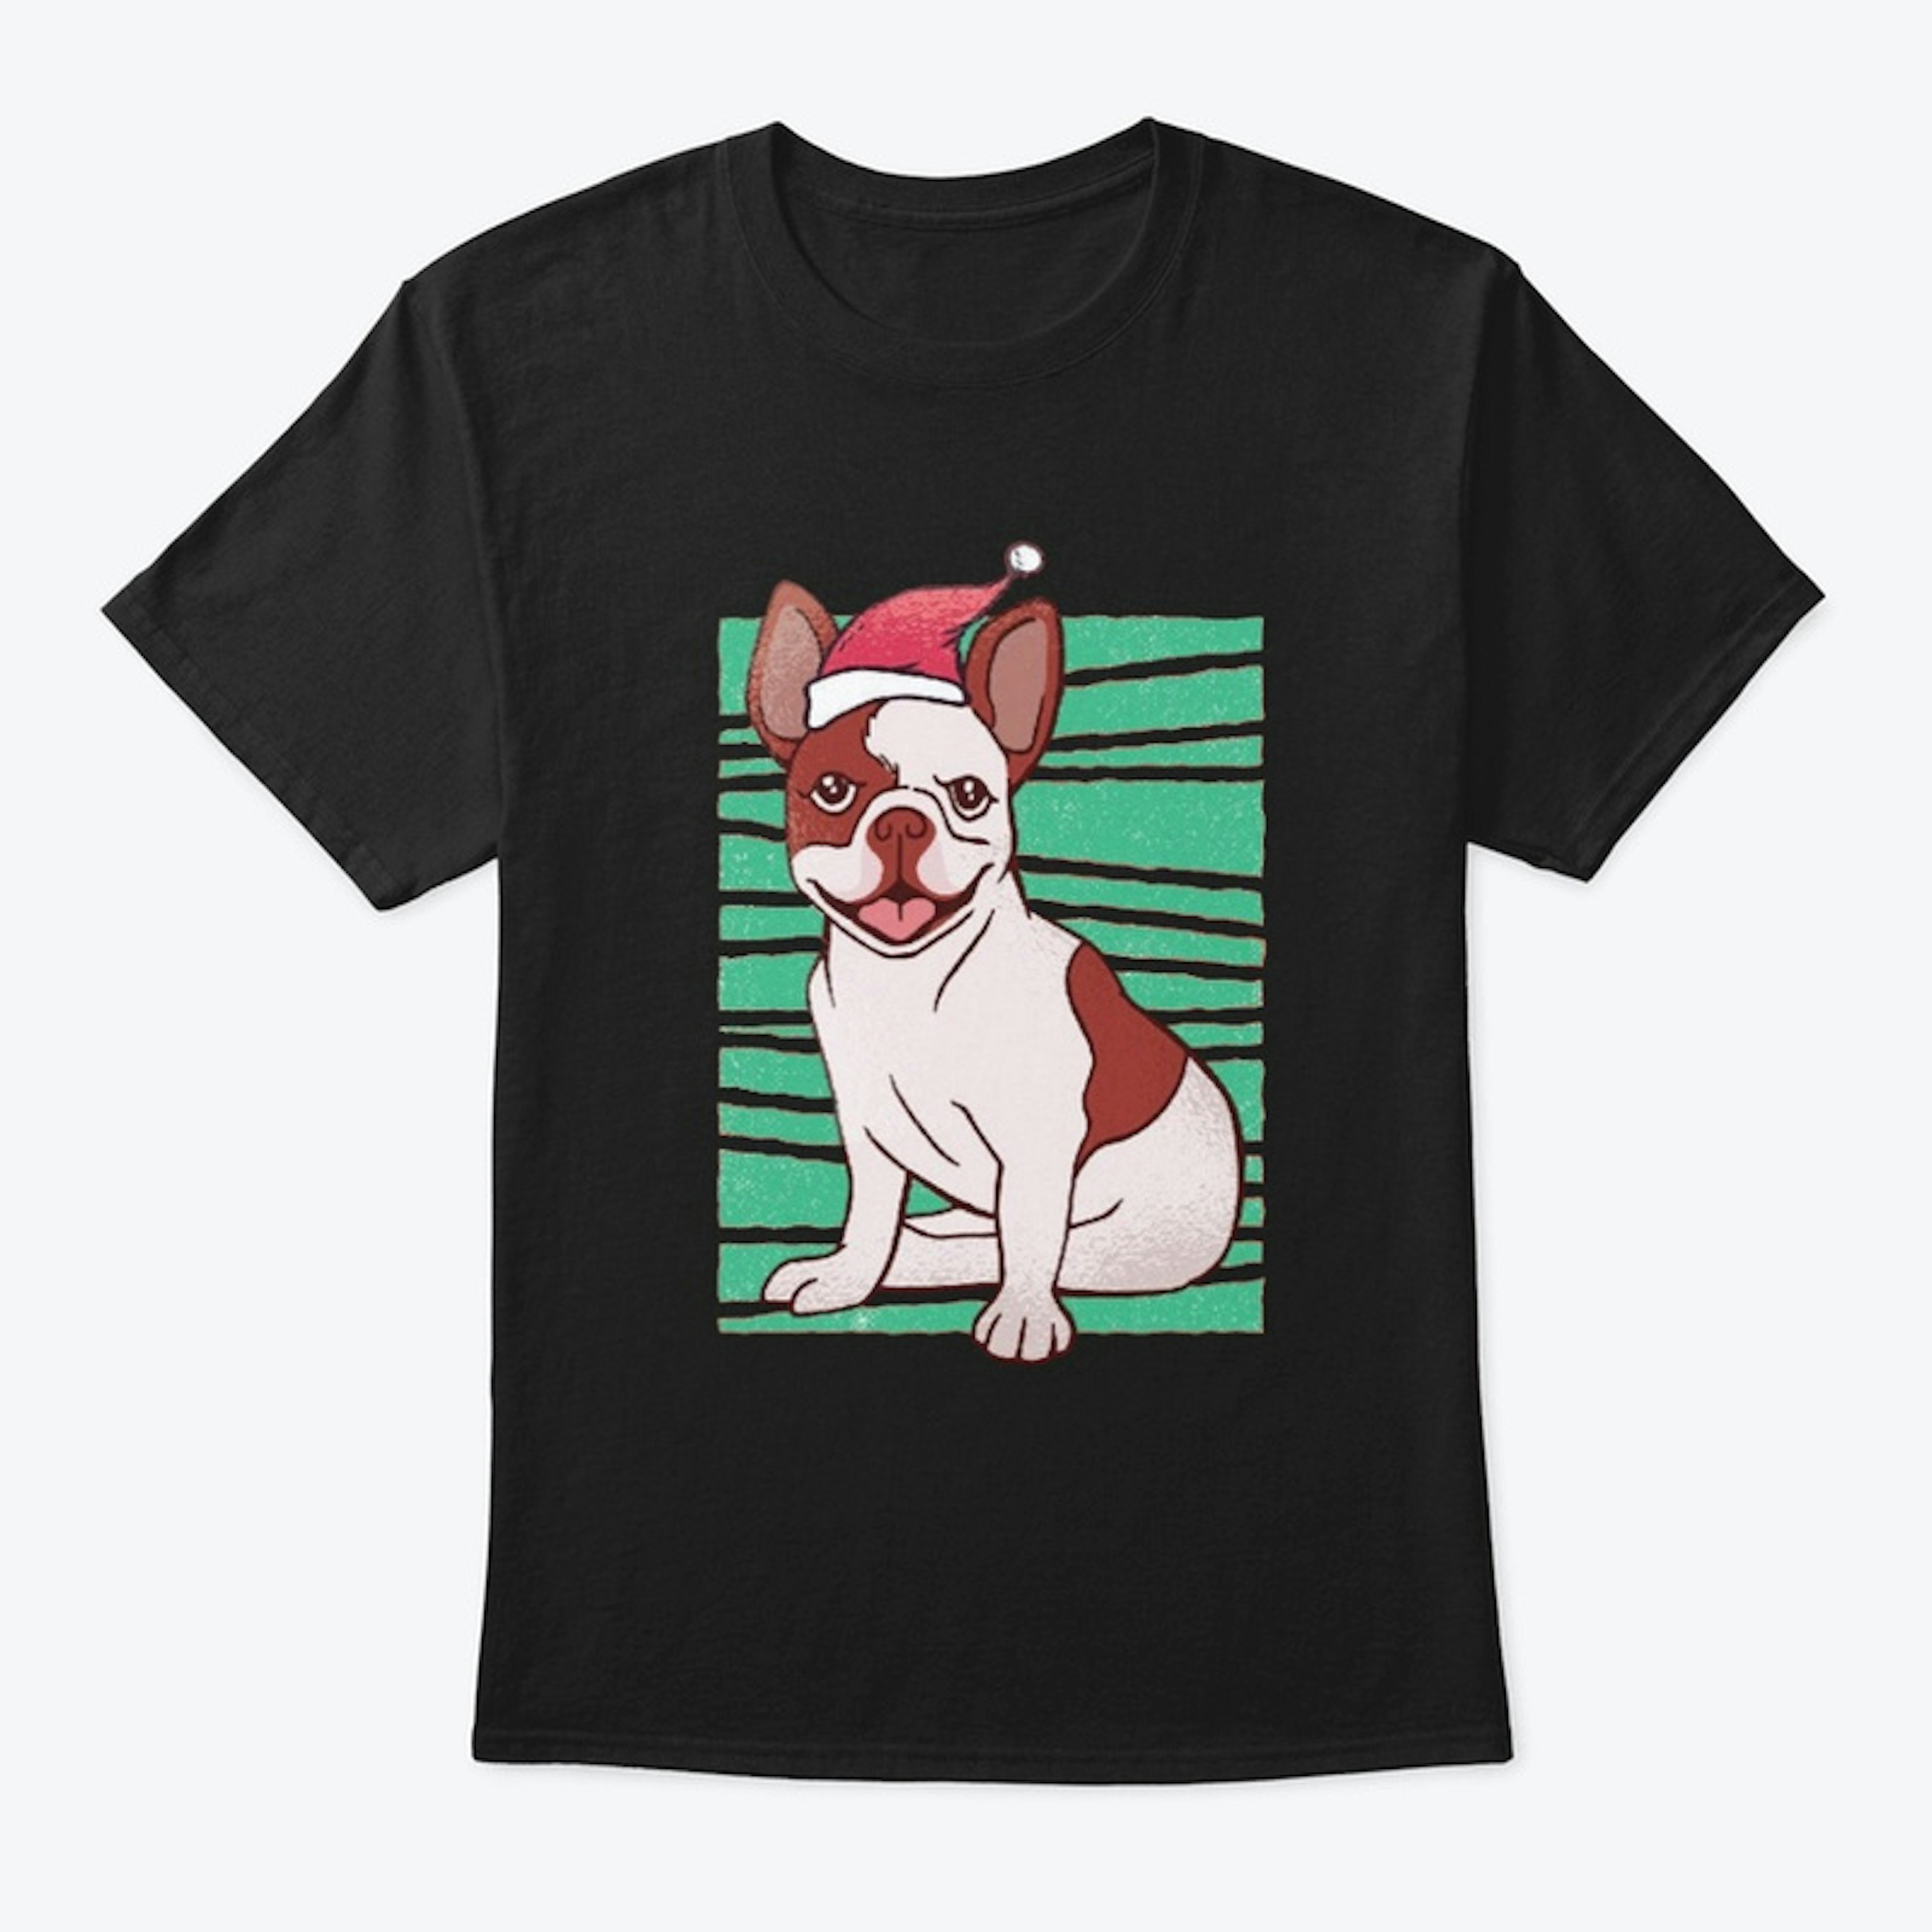 Boston Terrier Shirt